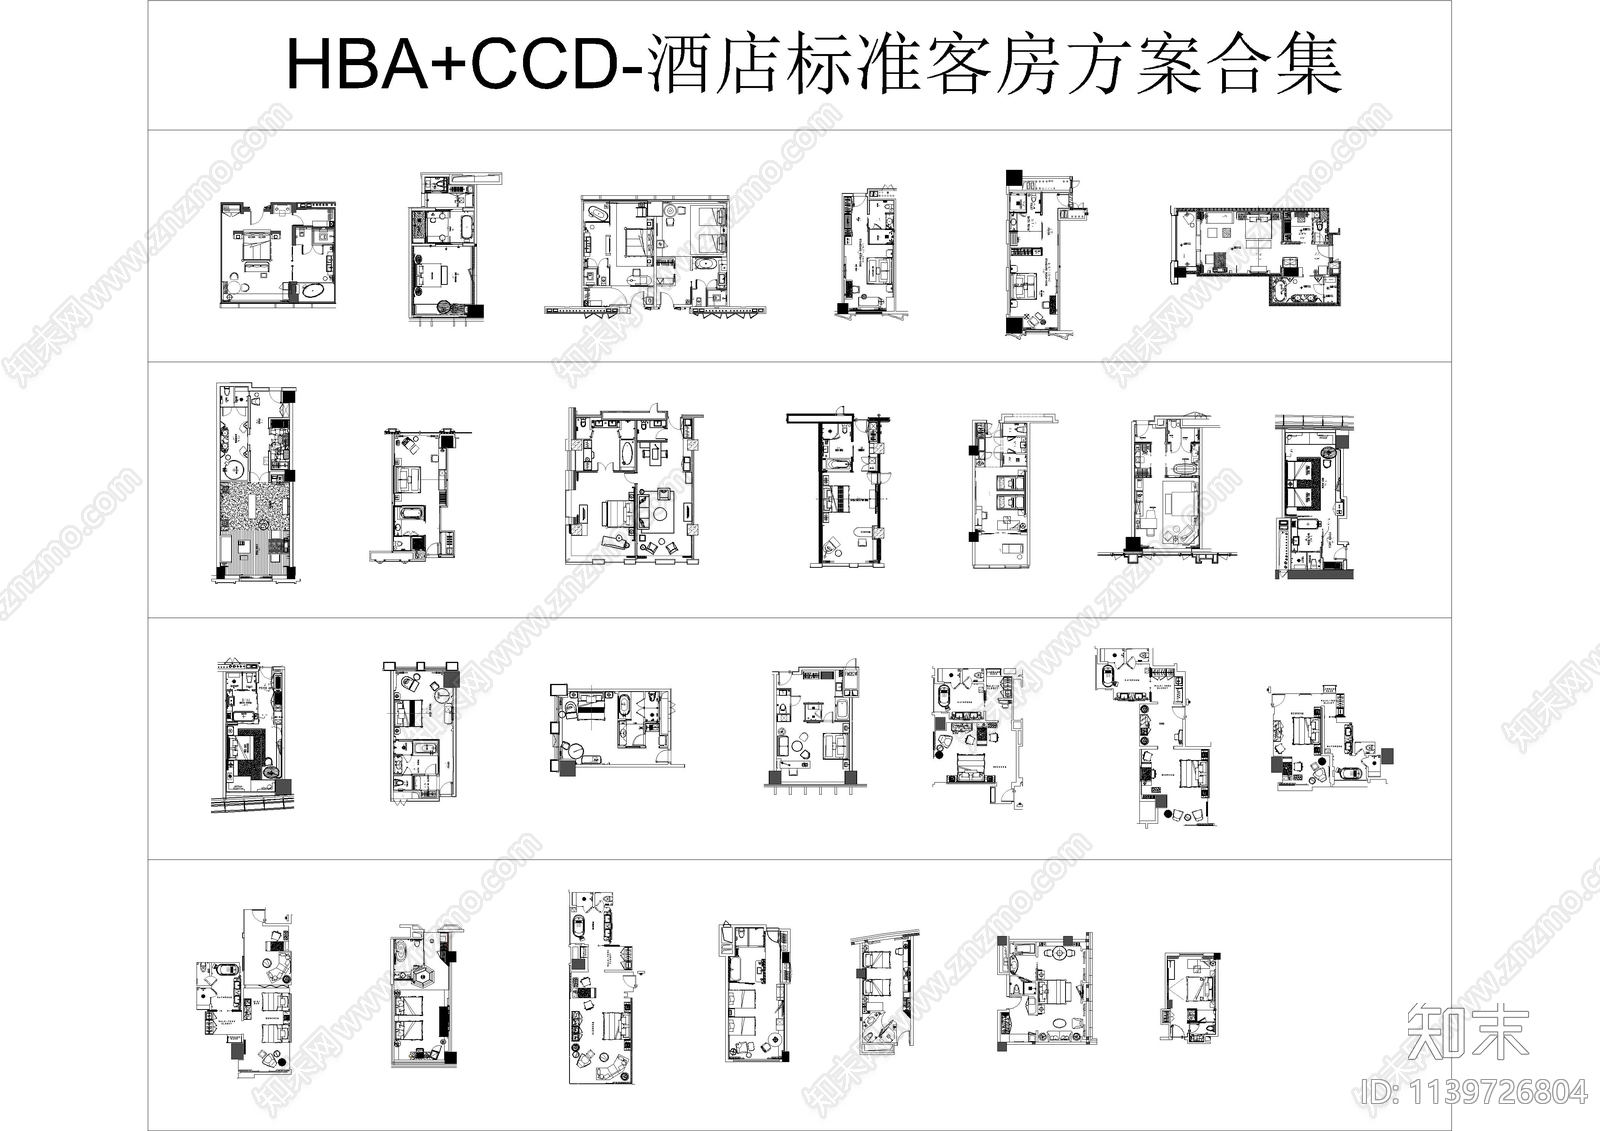 HBACCD标准客房平面方案图施工图下载【ID:1139726804】